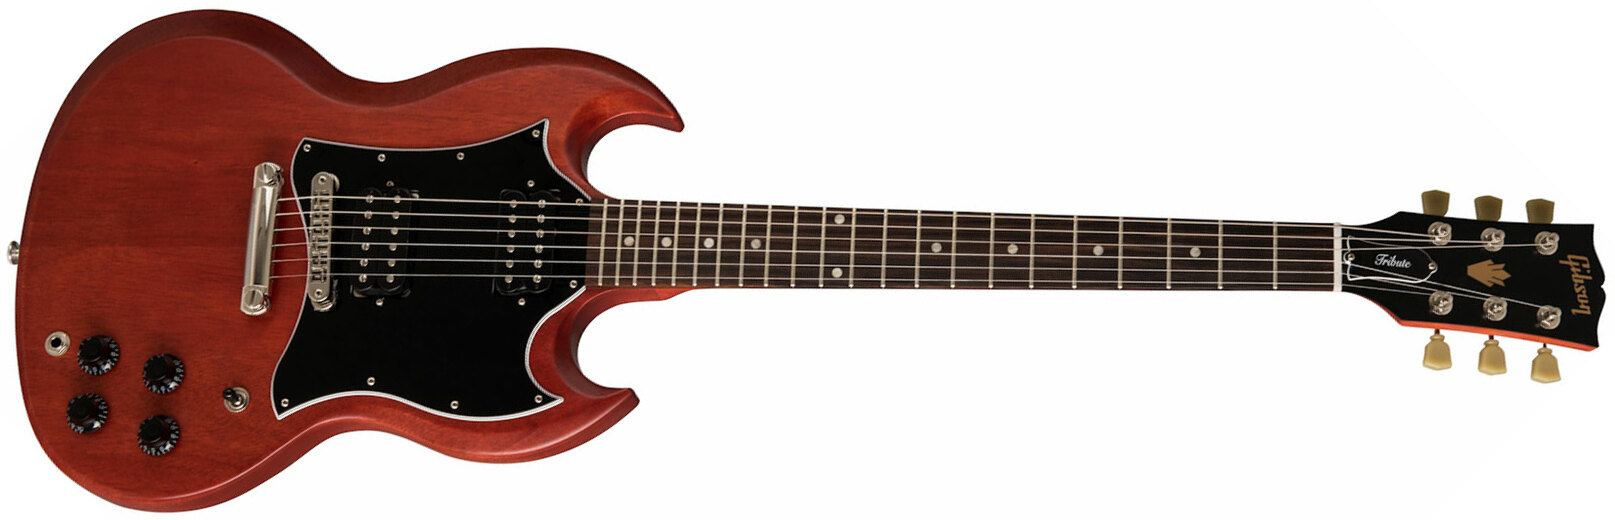 Gibson Sg Tribute Modern 2h Ht Rw - Vintage Cherry Satin - Retro-rock elektrische gitaar - Main picture